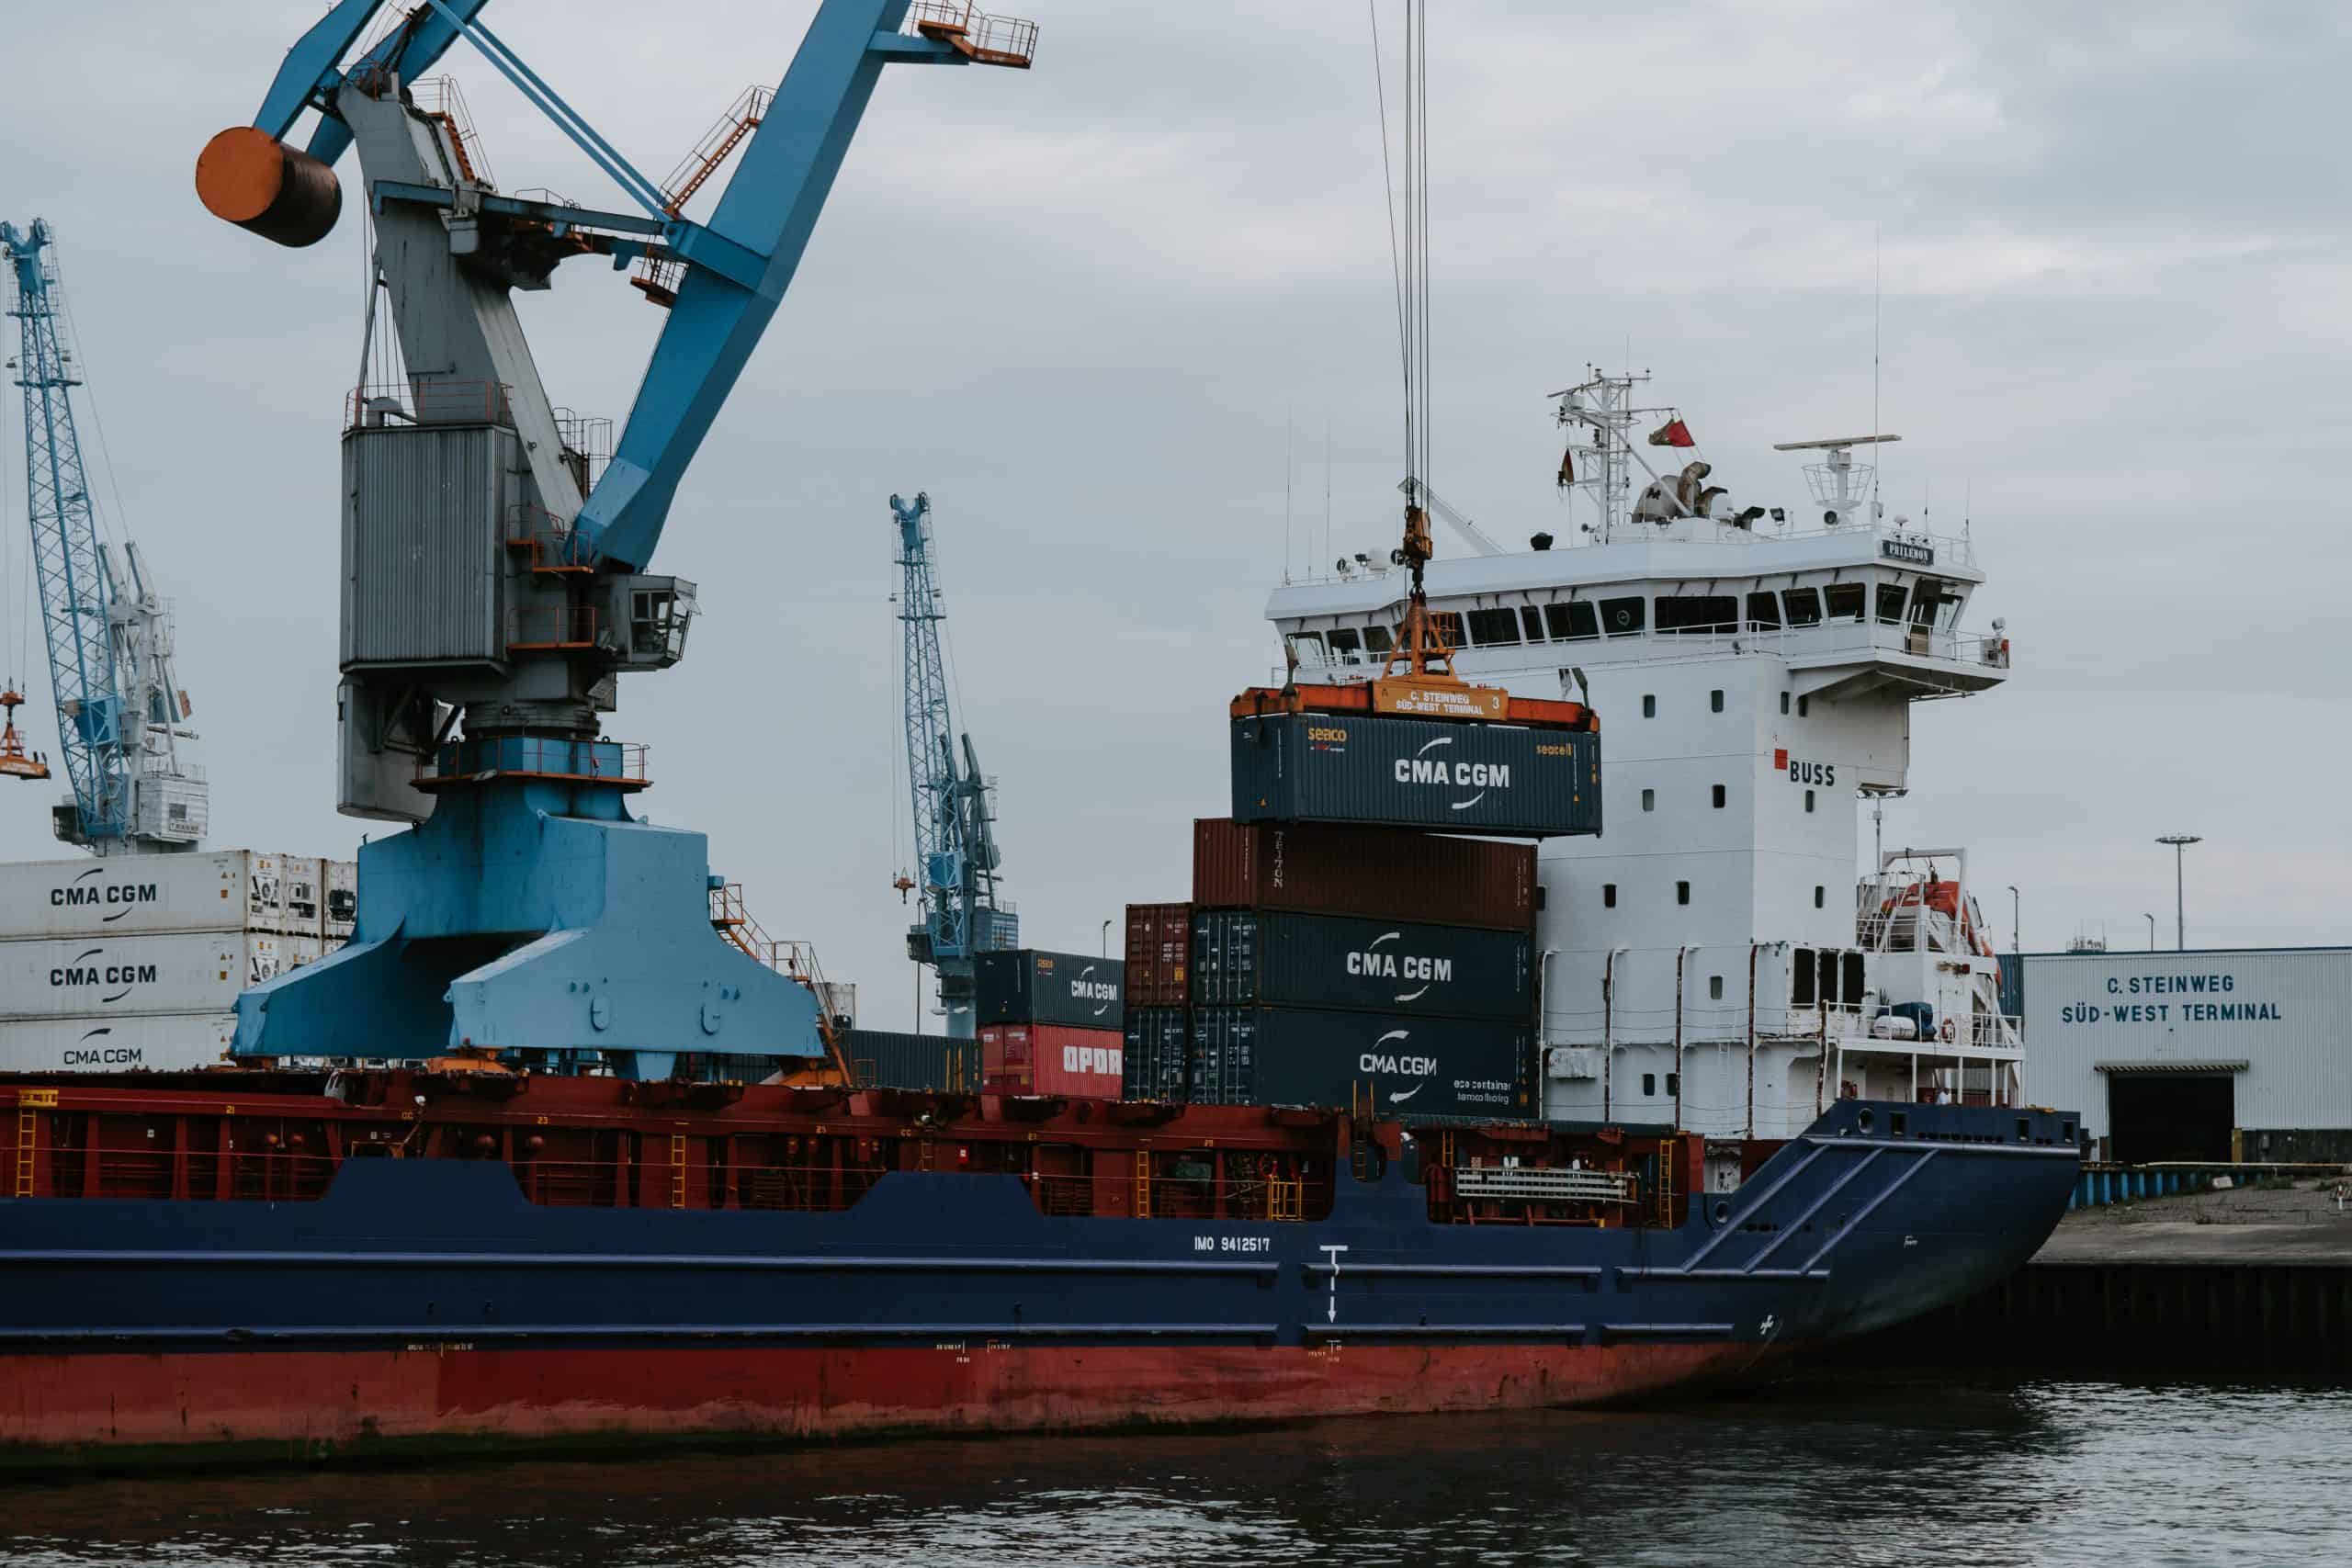 Navegação sob ameaça: consequências para o comércio mundial